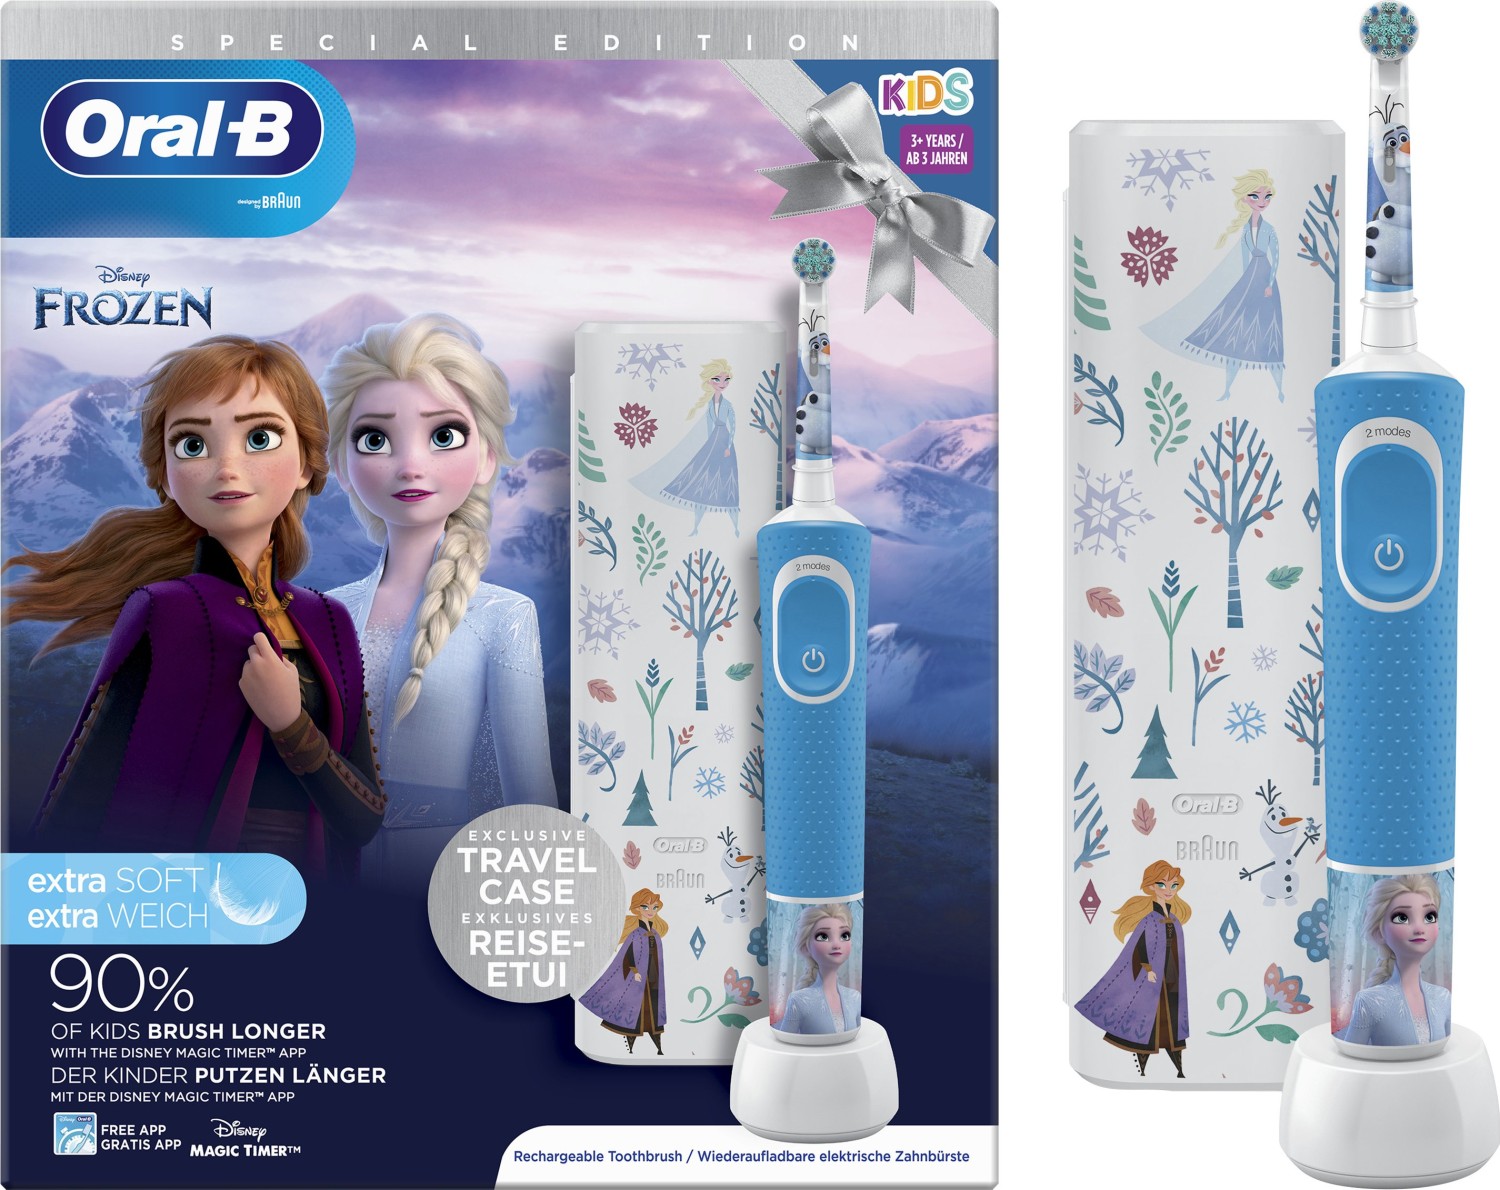 D100k Frozen 2 Gift Pack